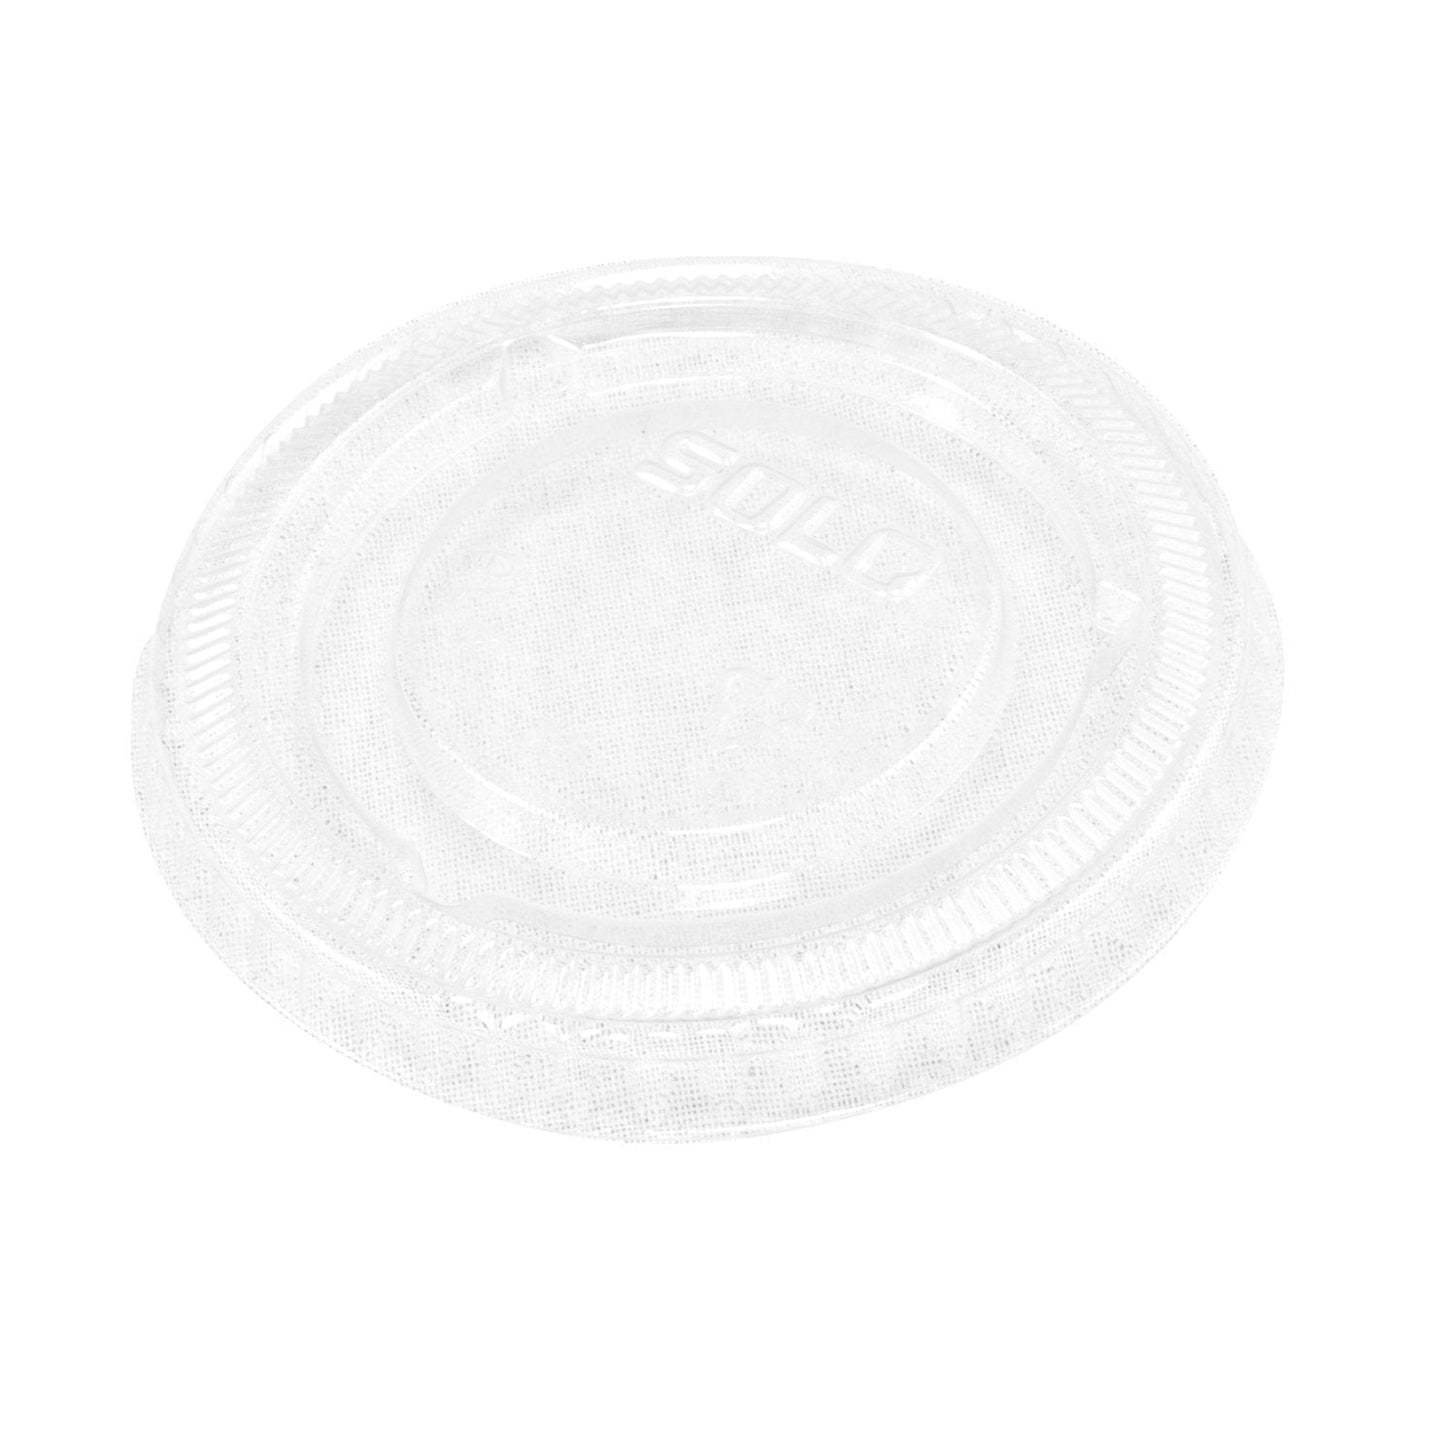 Souffle Cup Plastic - 3.25 oz - 2500 Qty